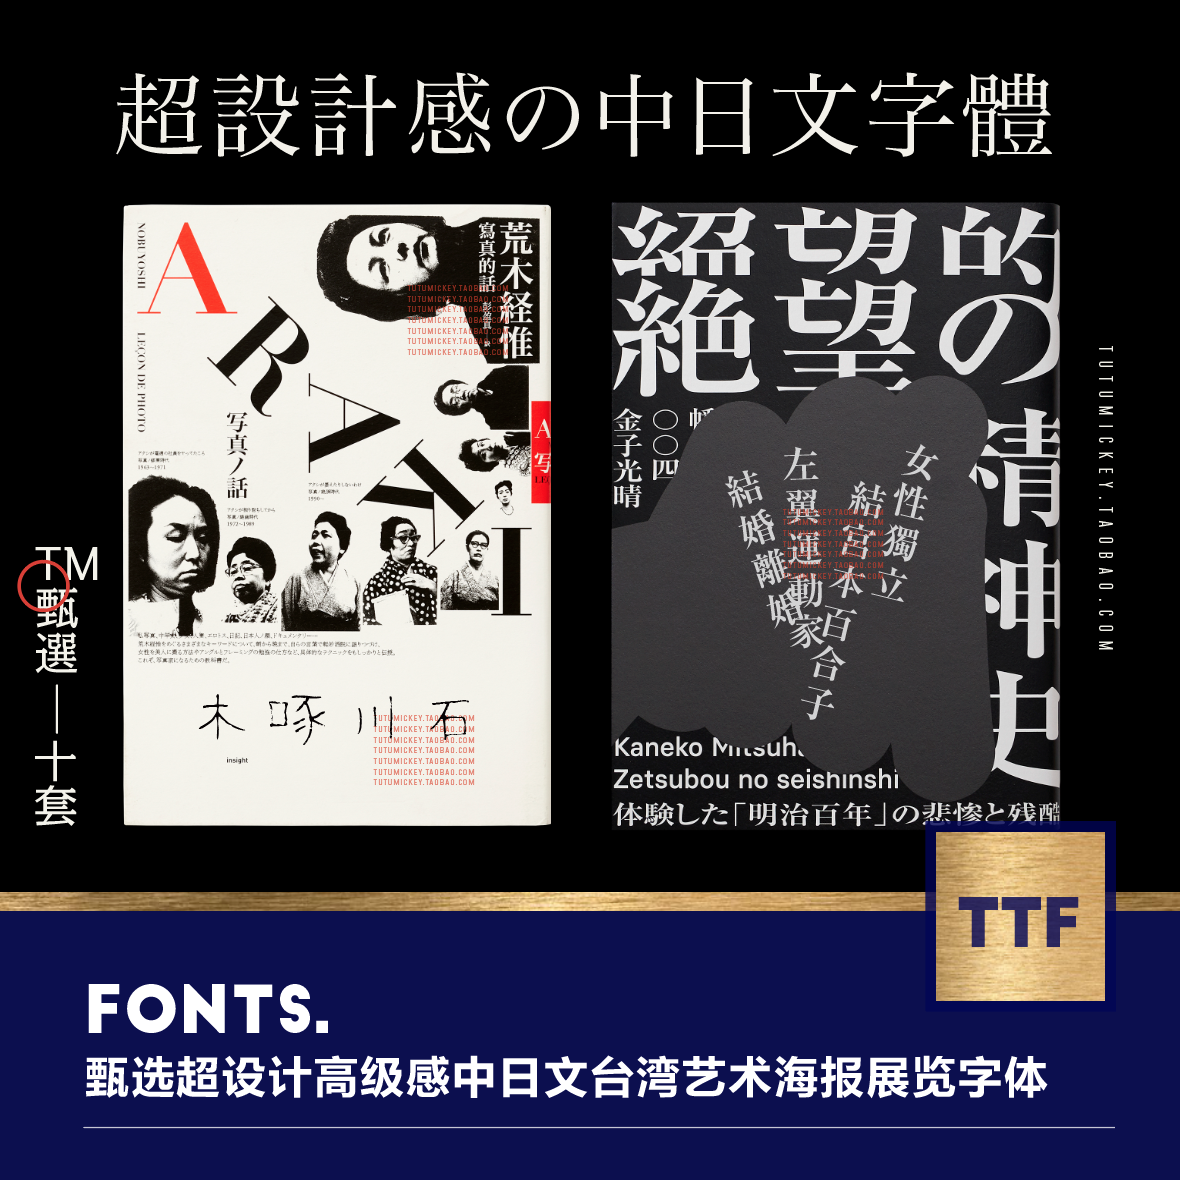 超高级艺术感中日文台湾系王志弘都在用的海报设计font字体素材